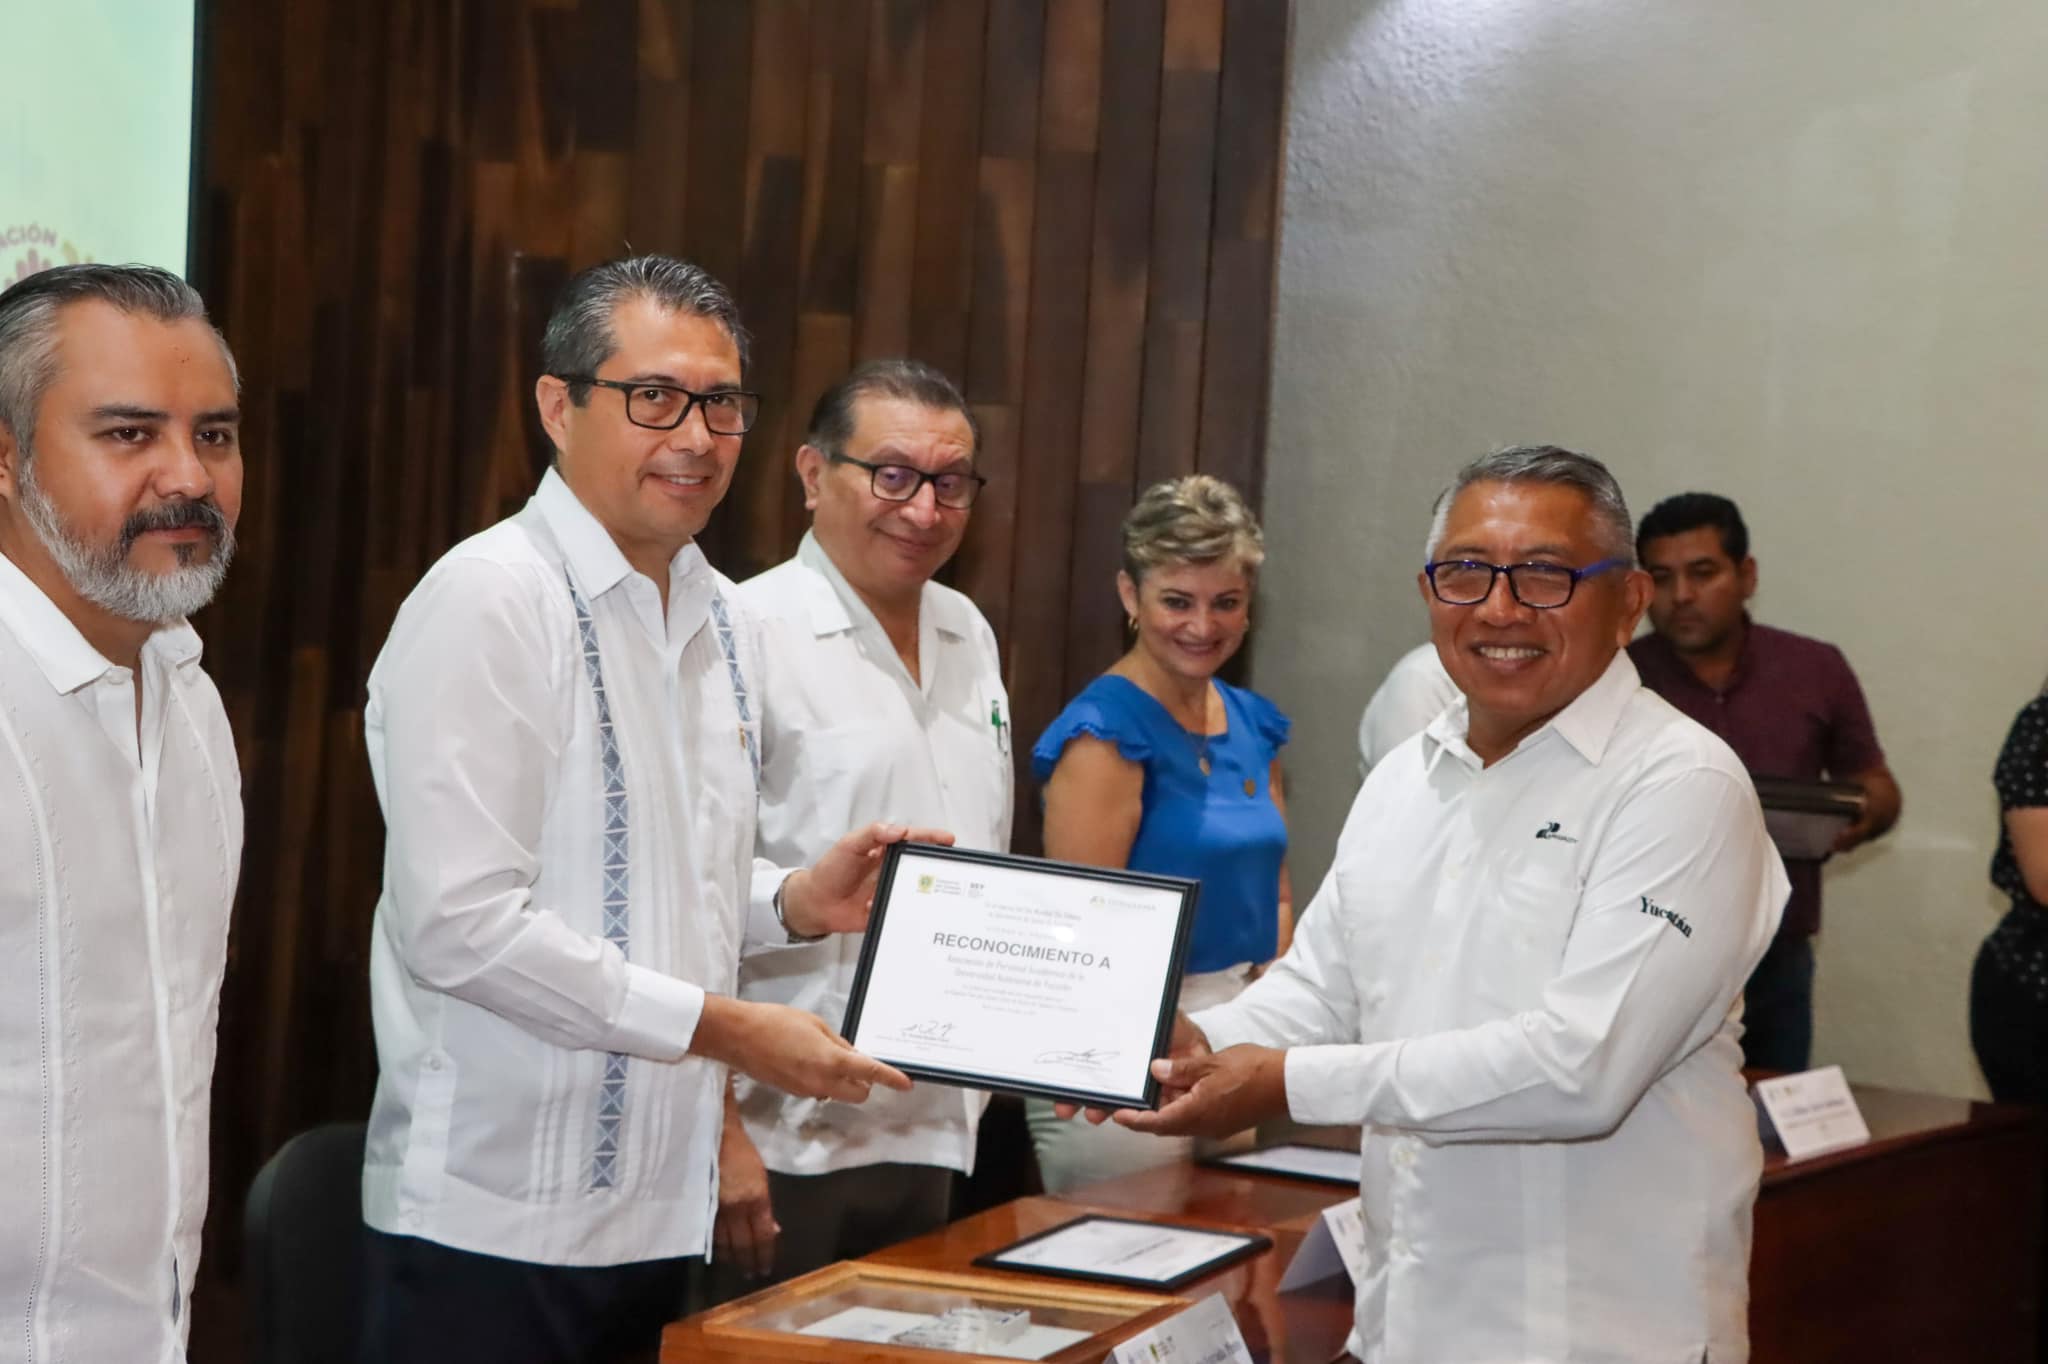 Featured image for “Día Mundial sin Tabaco | la Secretaría de Salud de Yucatán (SSY) certificó como Espacios 100 por ciento libres de humo de tabaco y emisiones a la APAUADY”